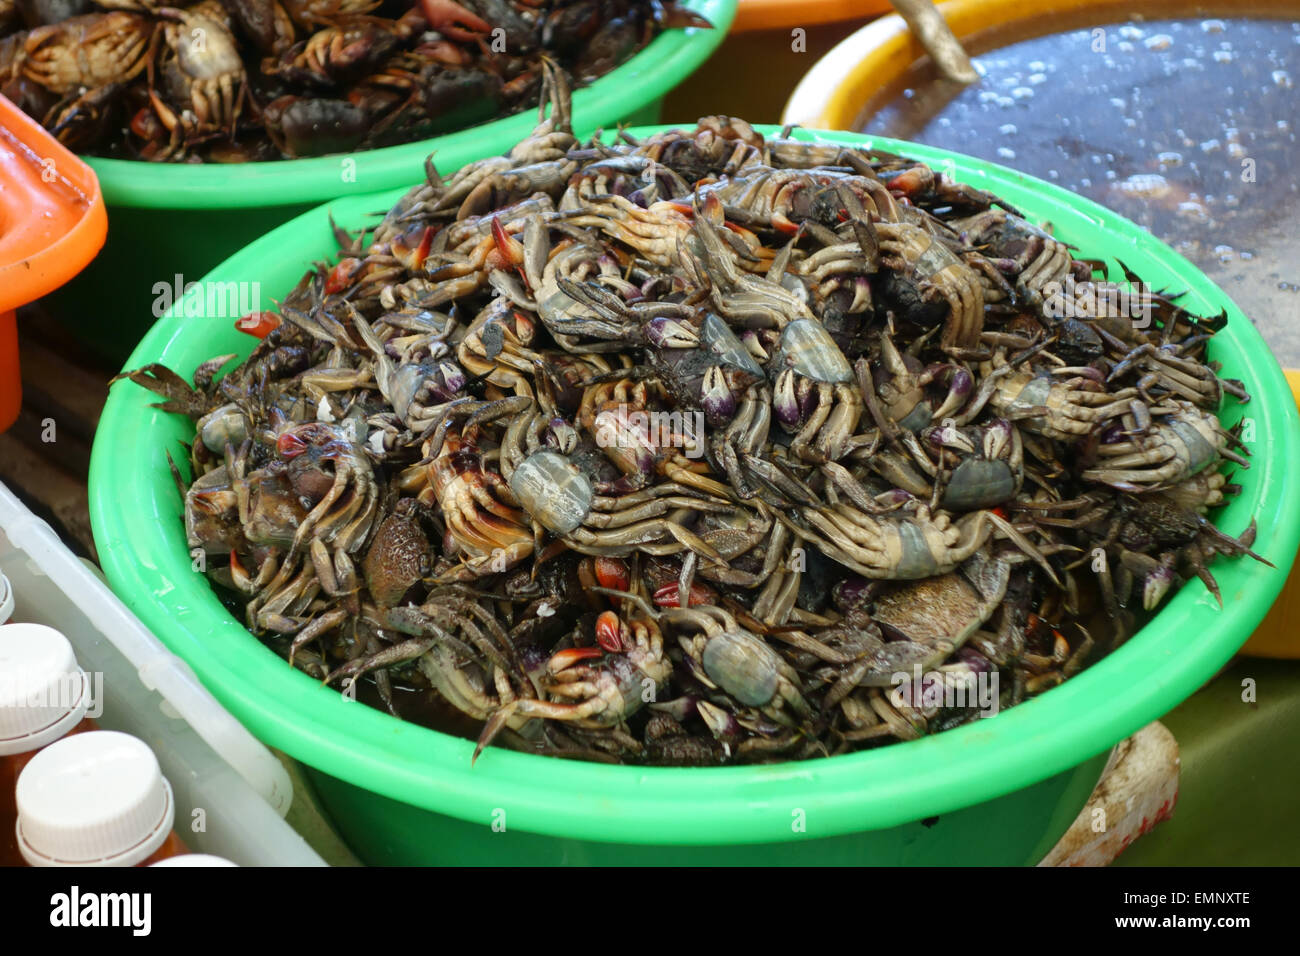 Los cangrejos muertos pequeños para su venta en un puesto en un mercado de alimentos de Bangkok Foto de stock